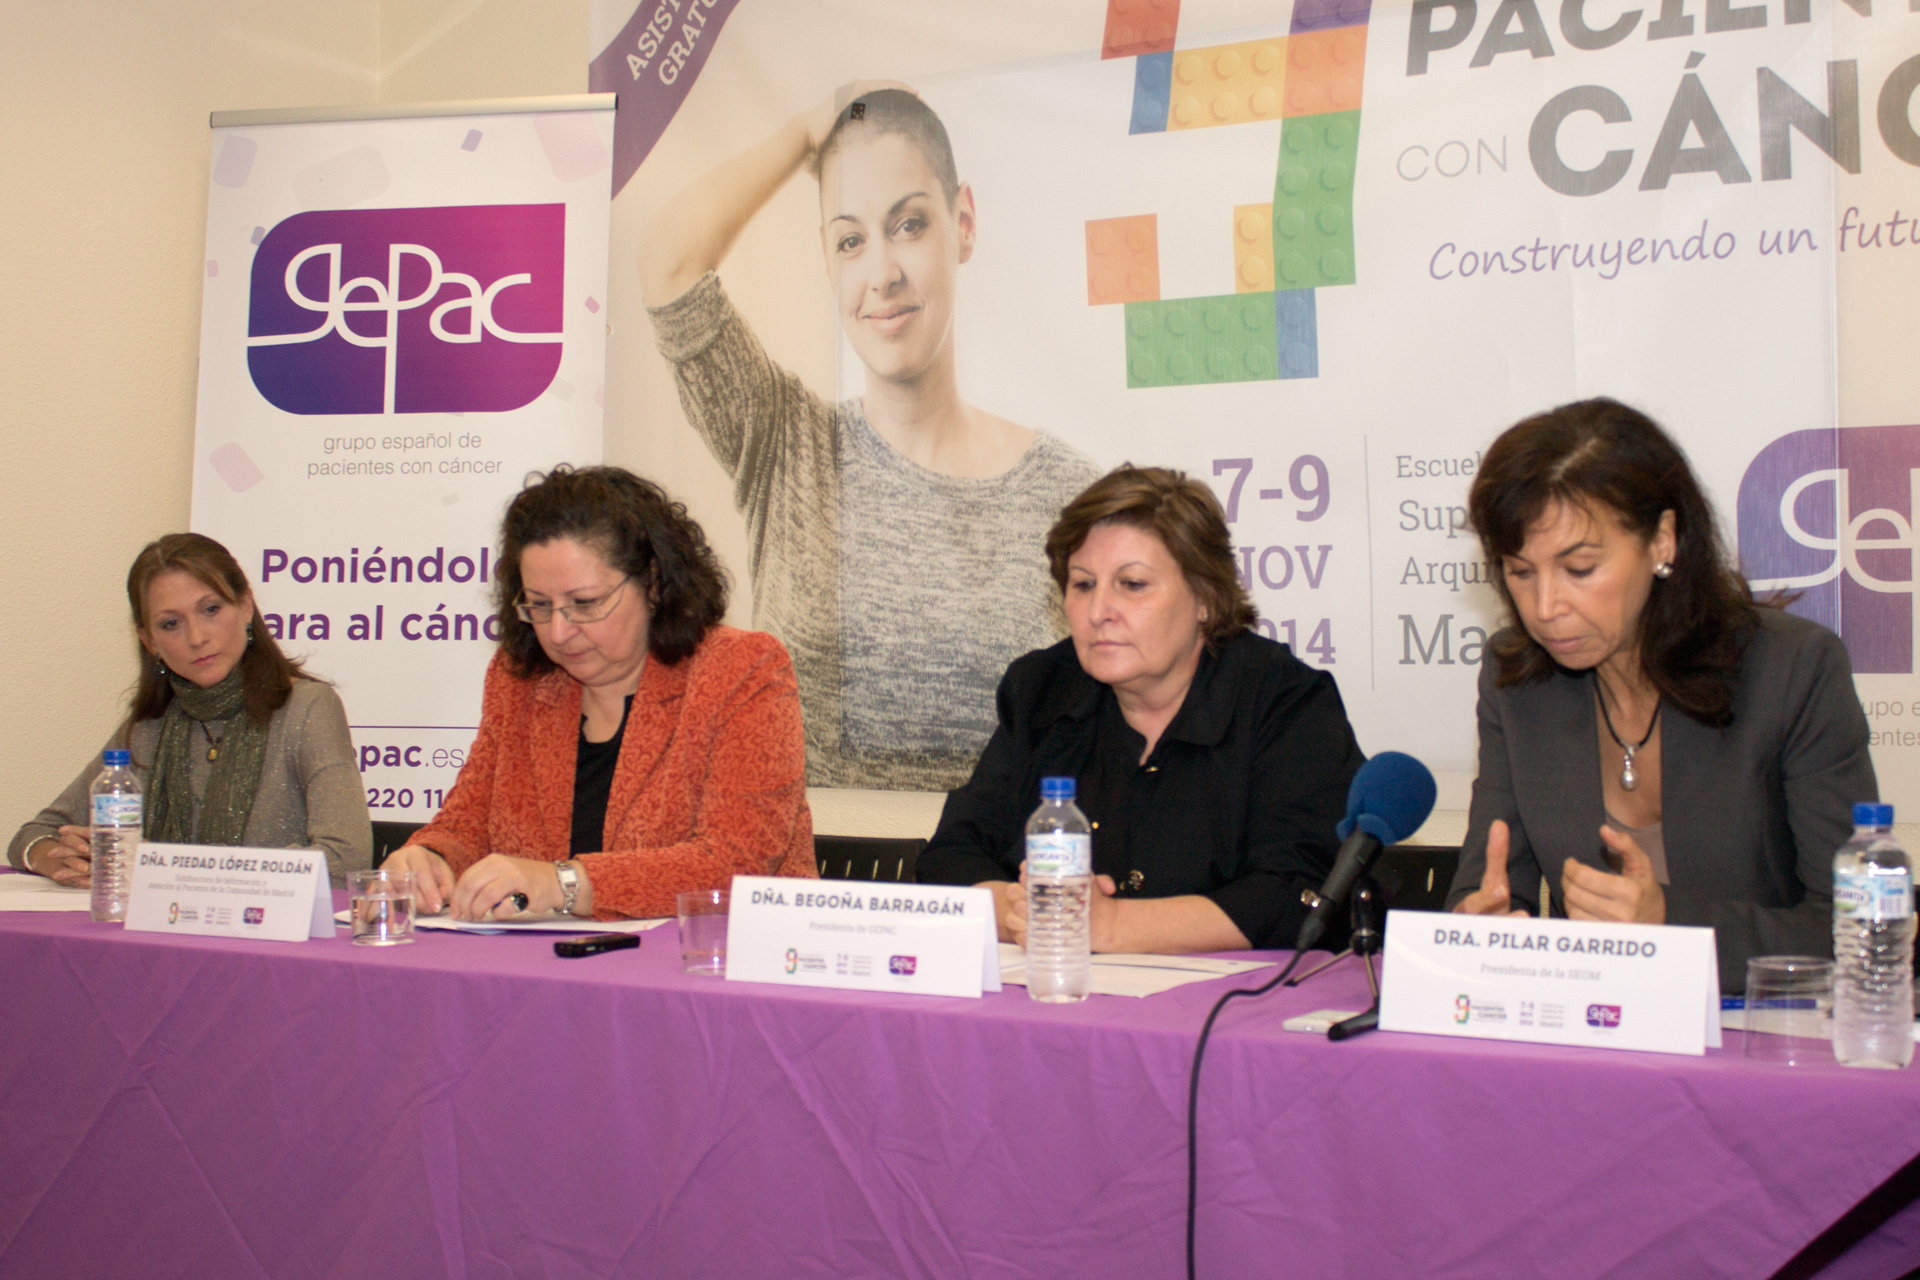 “Construyendo un futuro juntos”, GEPAC presenta el 9º Congreso de Pacientes con Cáncer